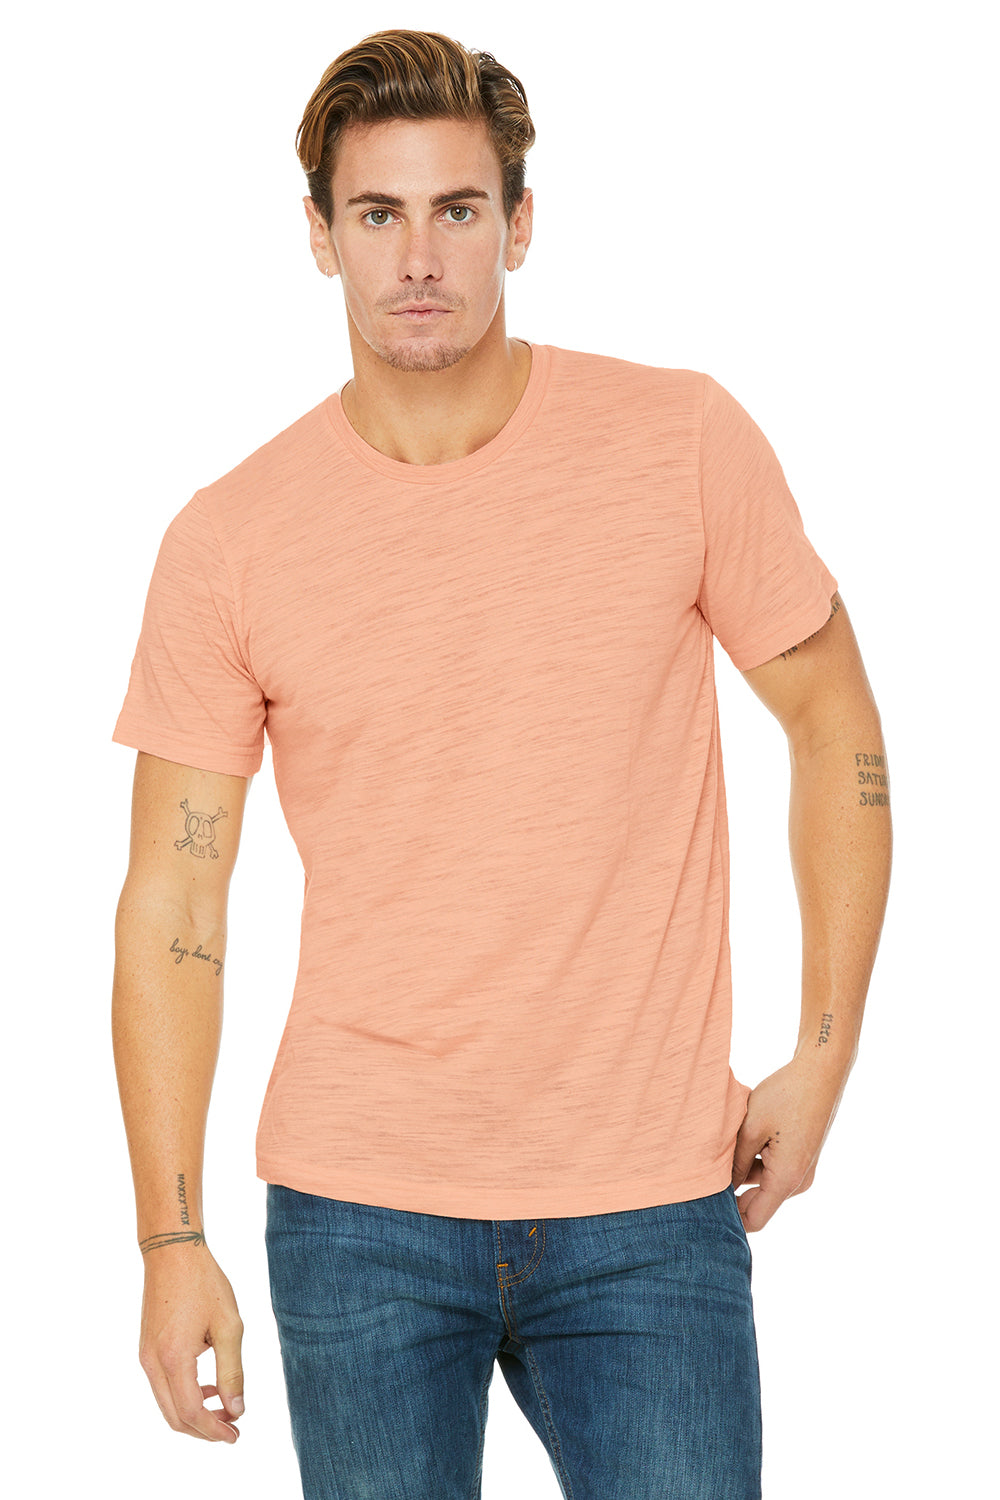 Bella + Canvas 3650 Mens Short Sleeve Crewneck T-Shirt Peach Slub Front